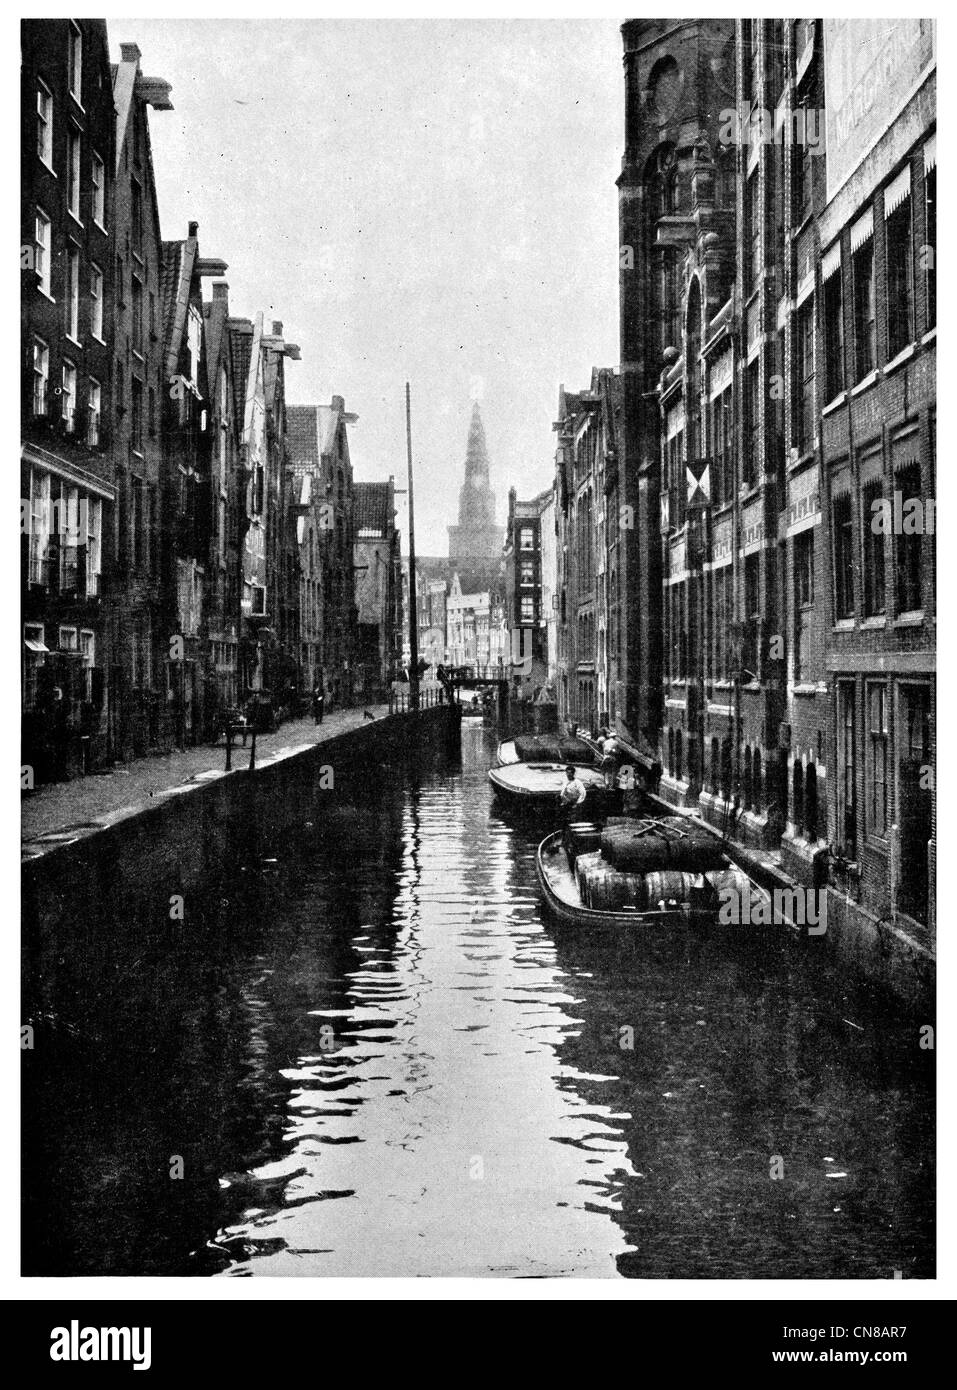 Pubblicato per la prima volta 1915 Vecchia Amsterdam magazzino merci commerciali merchant trimestre canal chiatta barca stretta Foto Stock